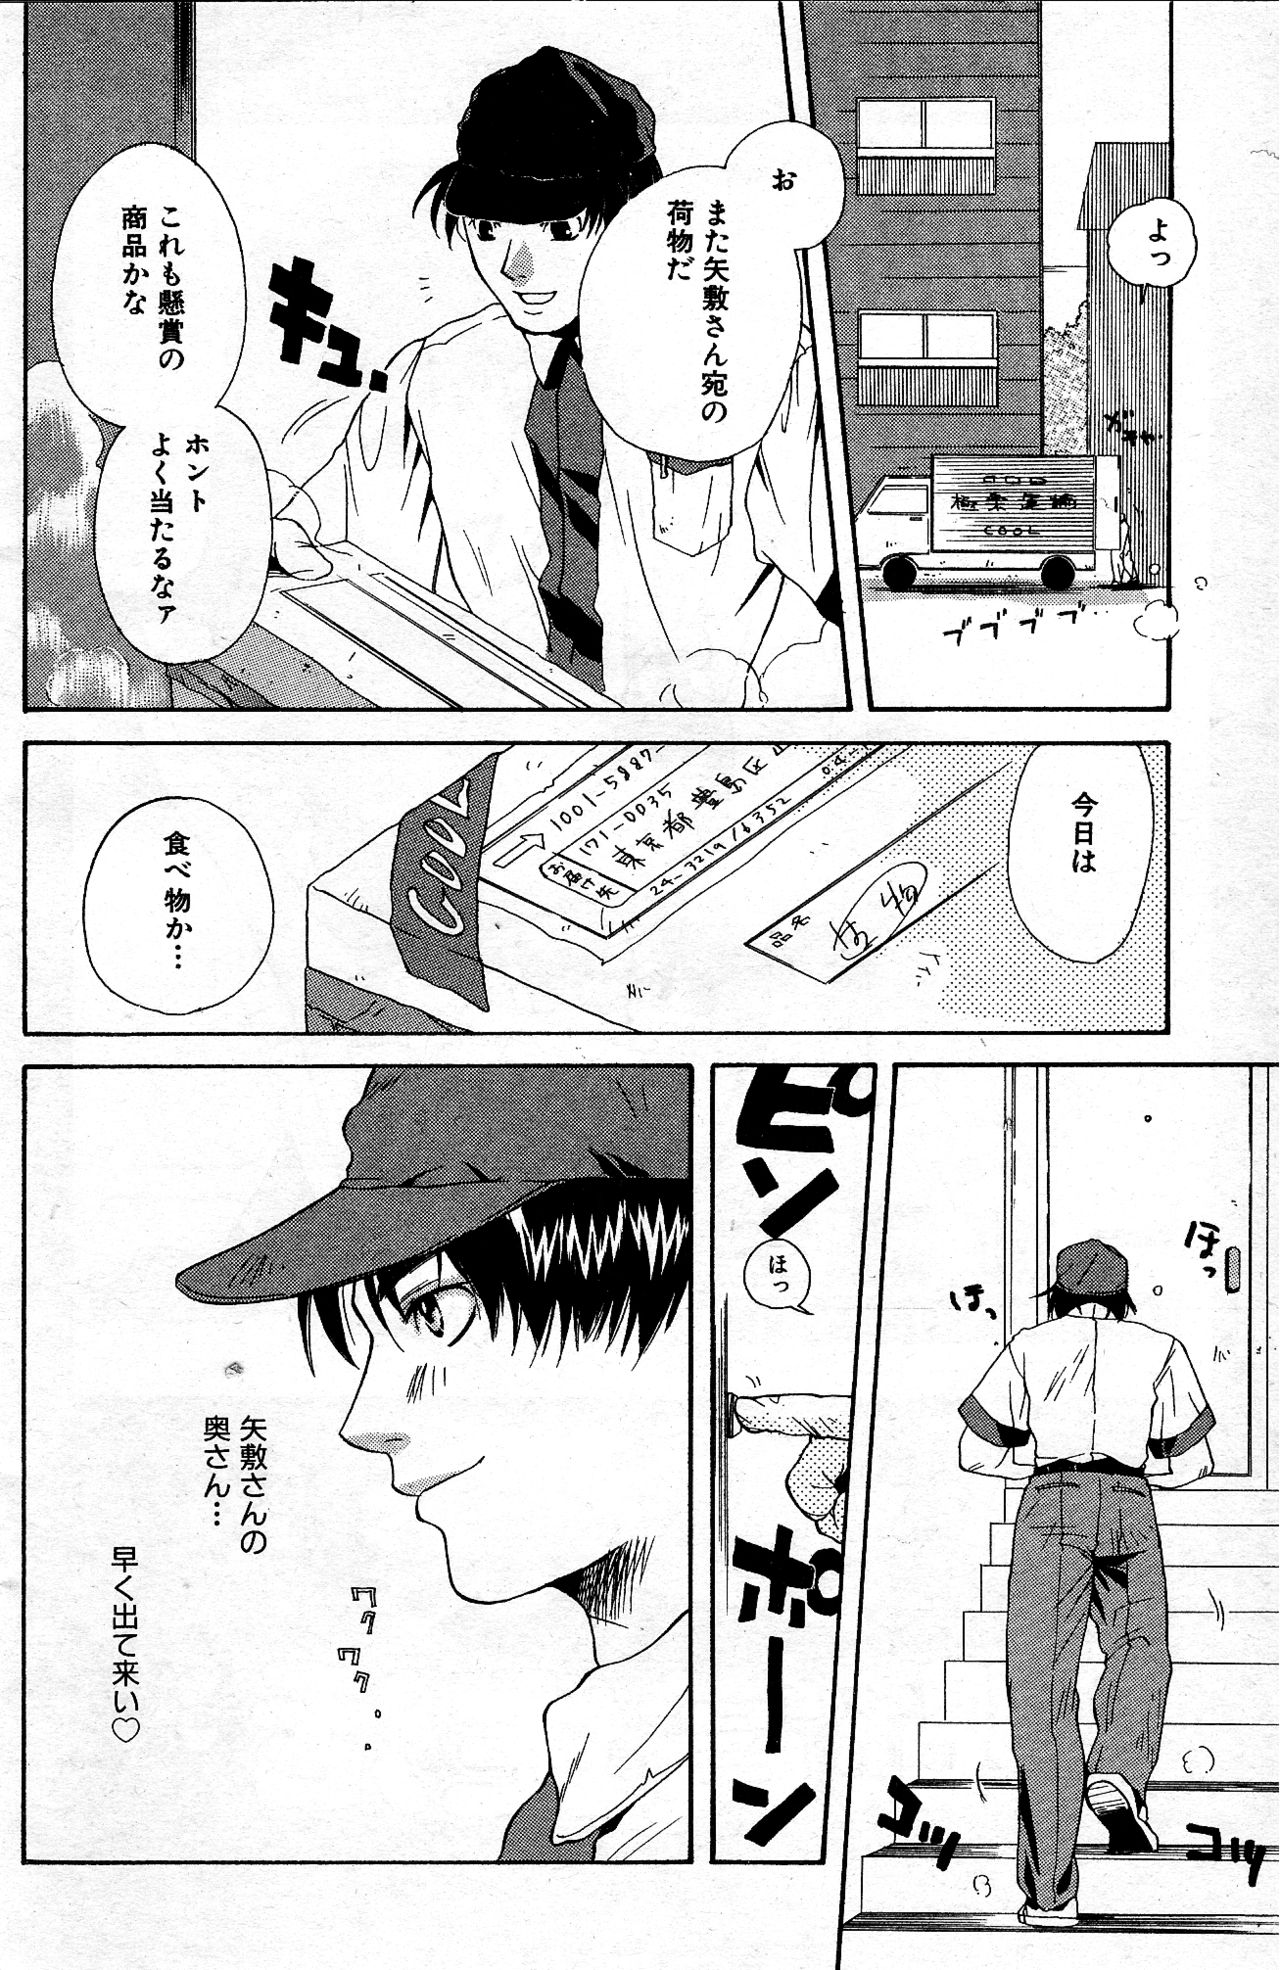 [Ithika Hinaki] Gokuraku Kenshou Seikatsu (Manga Bangaichi 2000-09) [Incomplete] [一加雛生] 極楽懸賞生活 (漫画ばんがいち 2000年9月号) [ページ欠落]